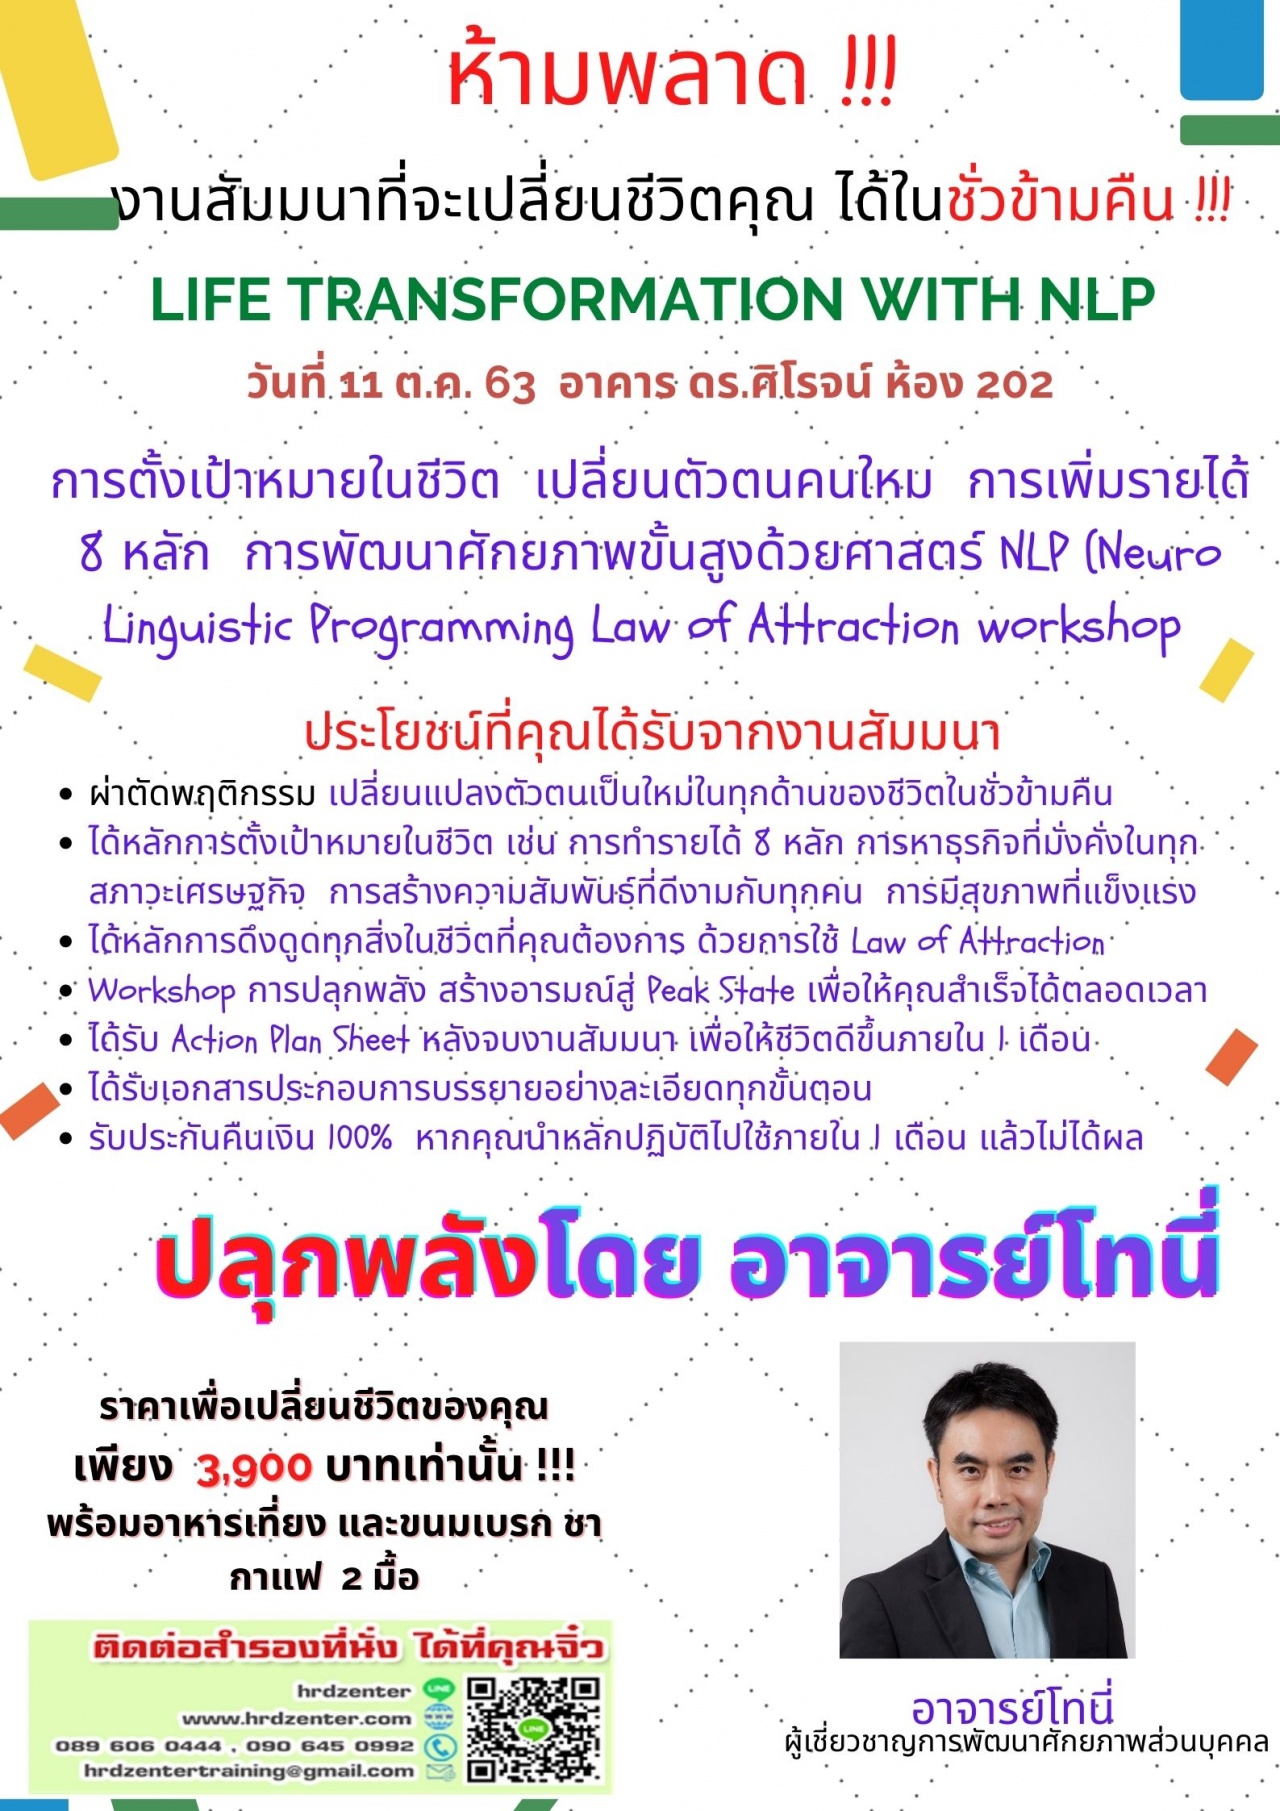 ห้ามพลาด !!! งานสัมมนาที่จะเปลี่ยนชีวิตคุณ ได้ในชั่วข้ามคืน !!! LIFE TRANSFORMATION WITH NLP